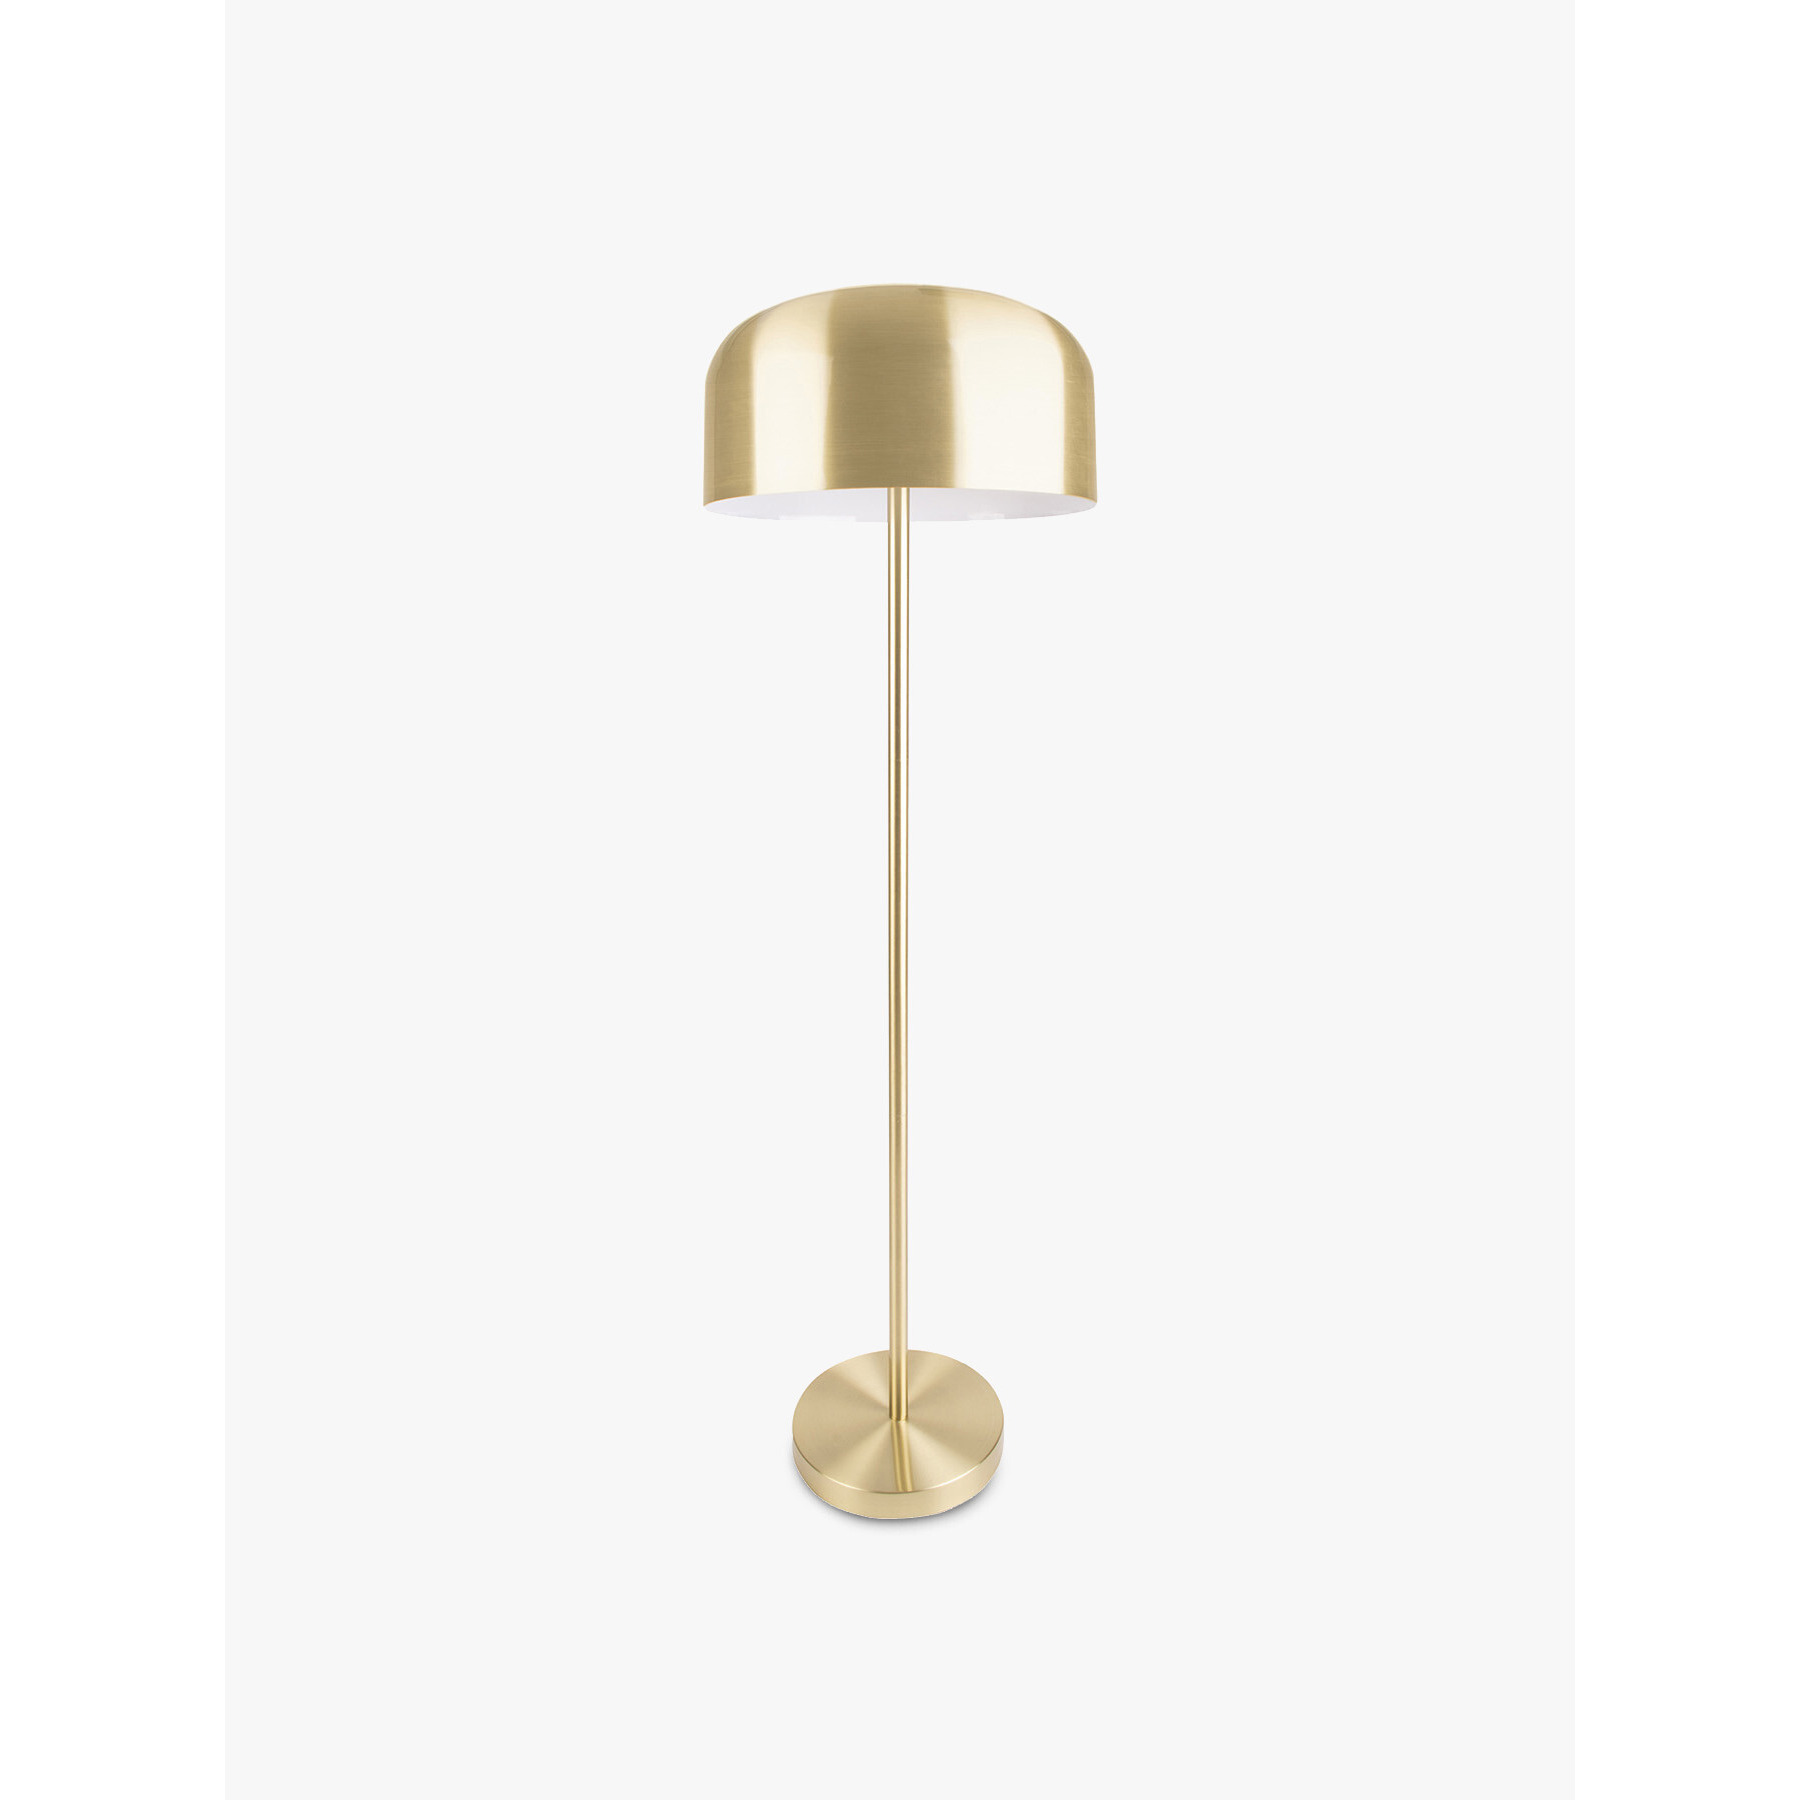 Leitmotiv Capa Metallic Floor Lamp Gold - image 1